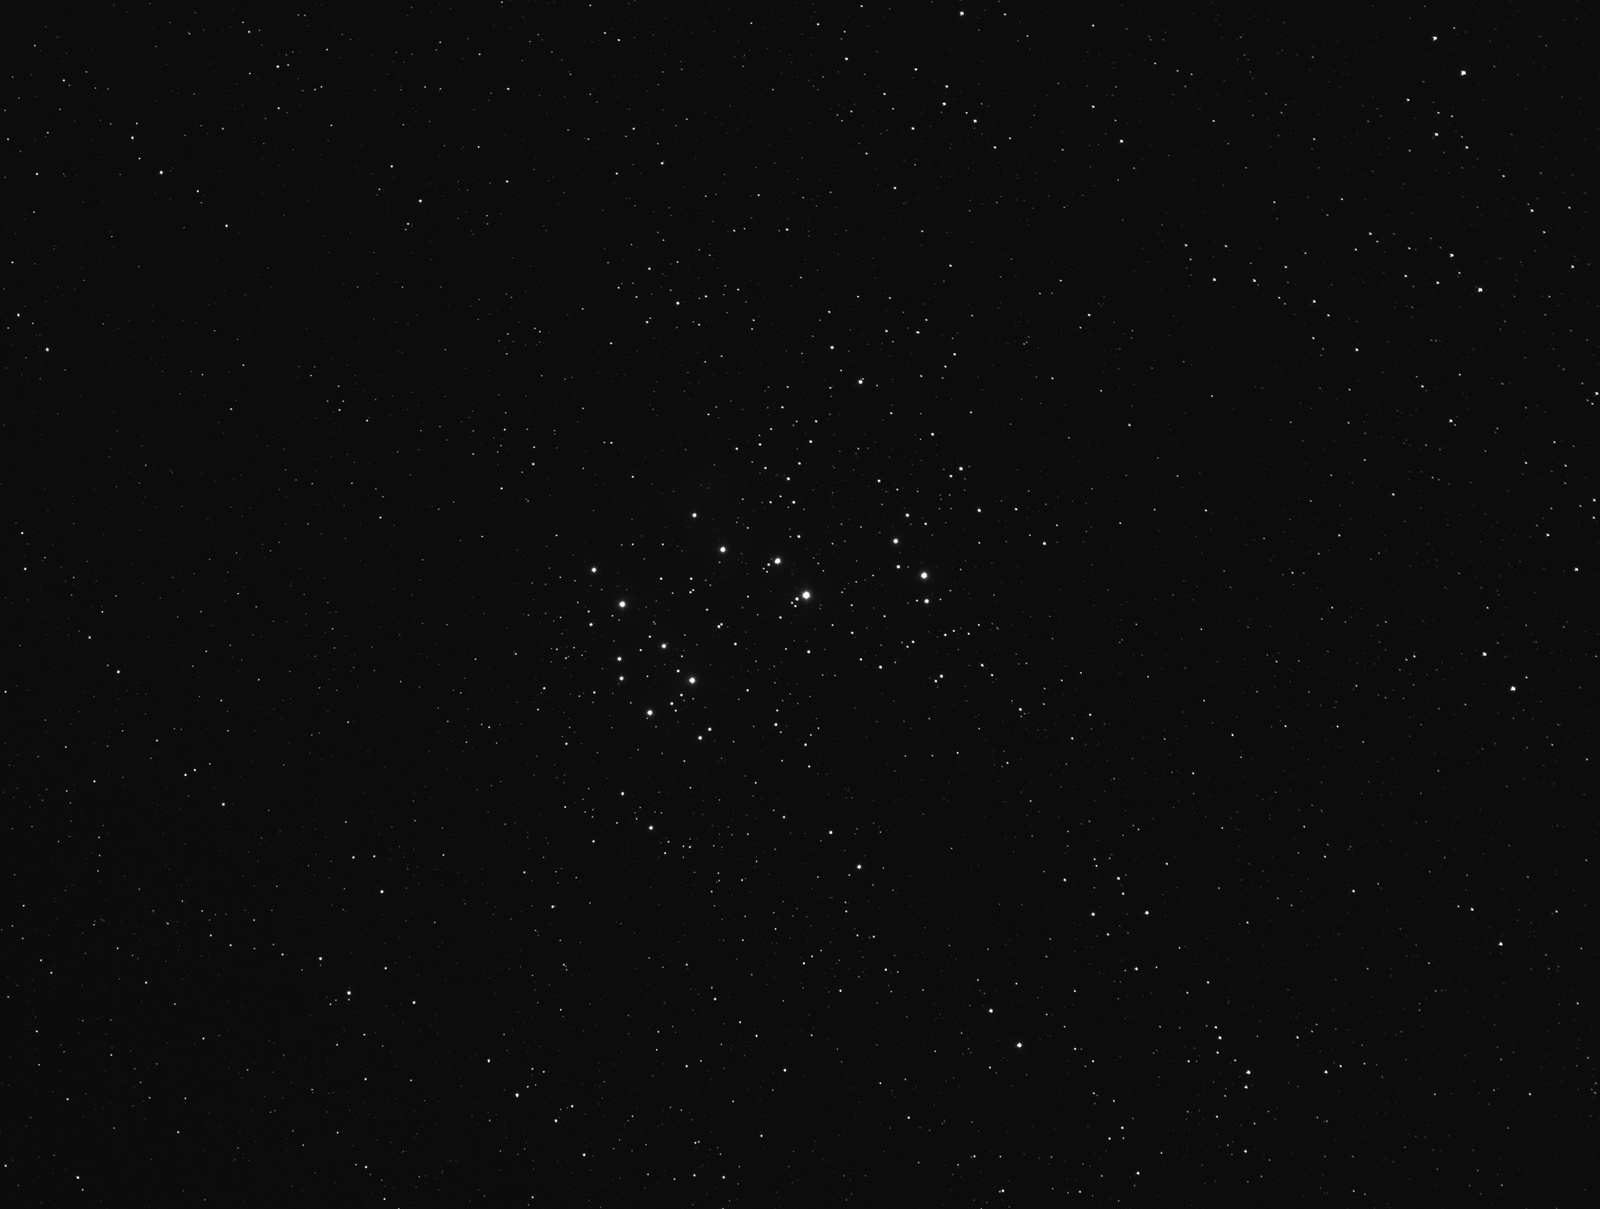 M45_2018-11-07_21-44-44_R_0041_podwójne_gwiazdy.jpg